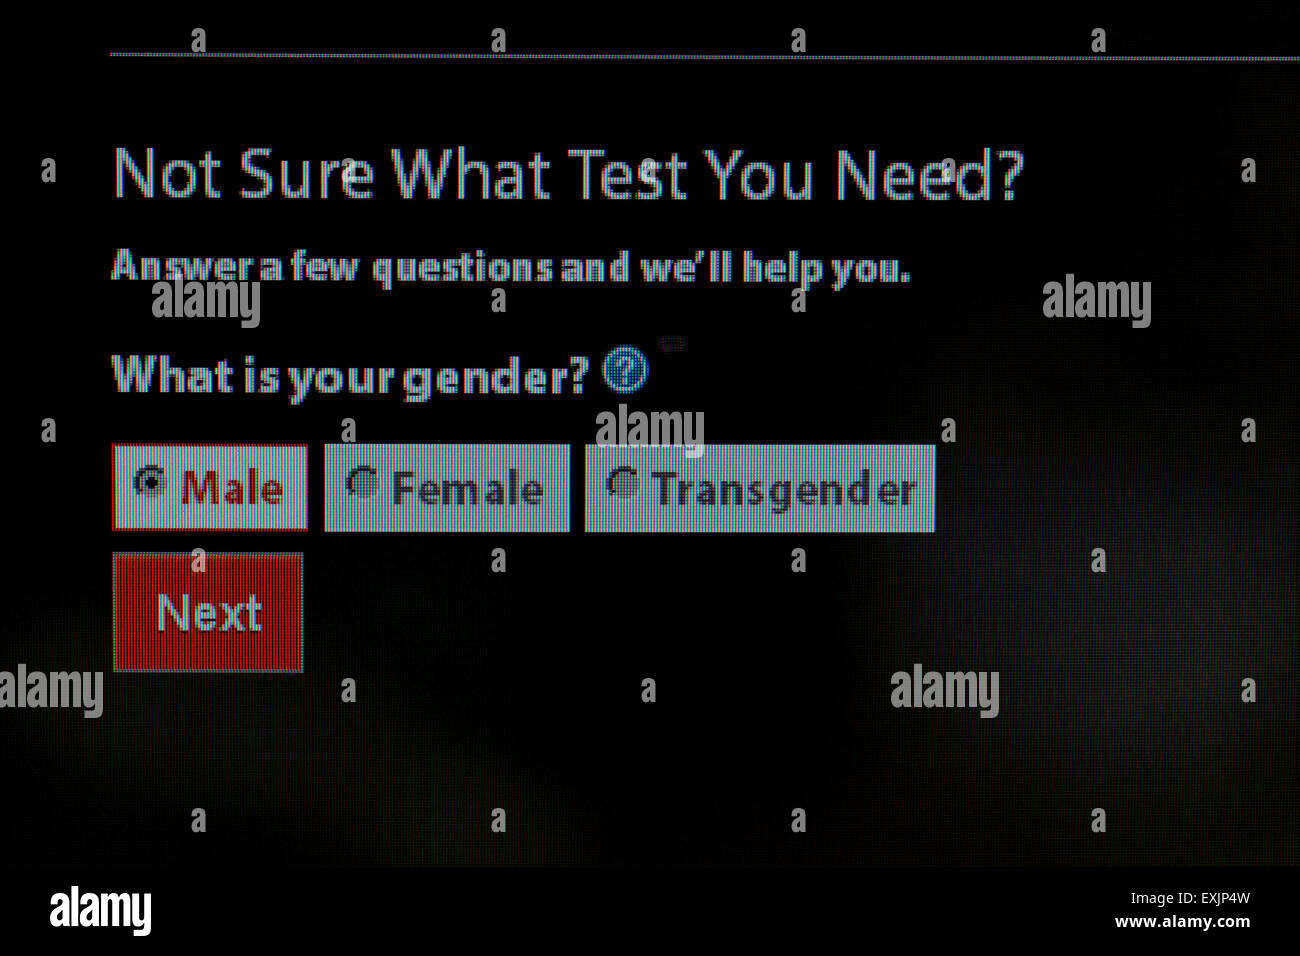 Le choix du sexe de l'homme, femme, et transgenre, sur le VIH / dépistage des MTS d'information sur centres de contrôle des maladies Banque D'Images